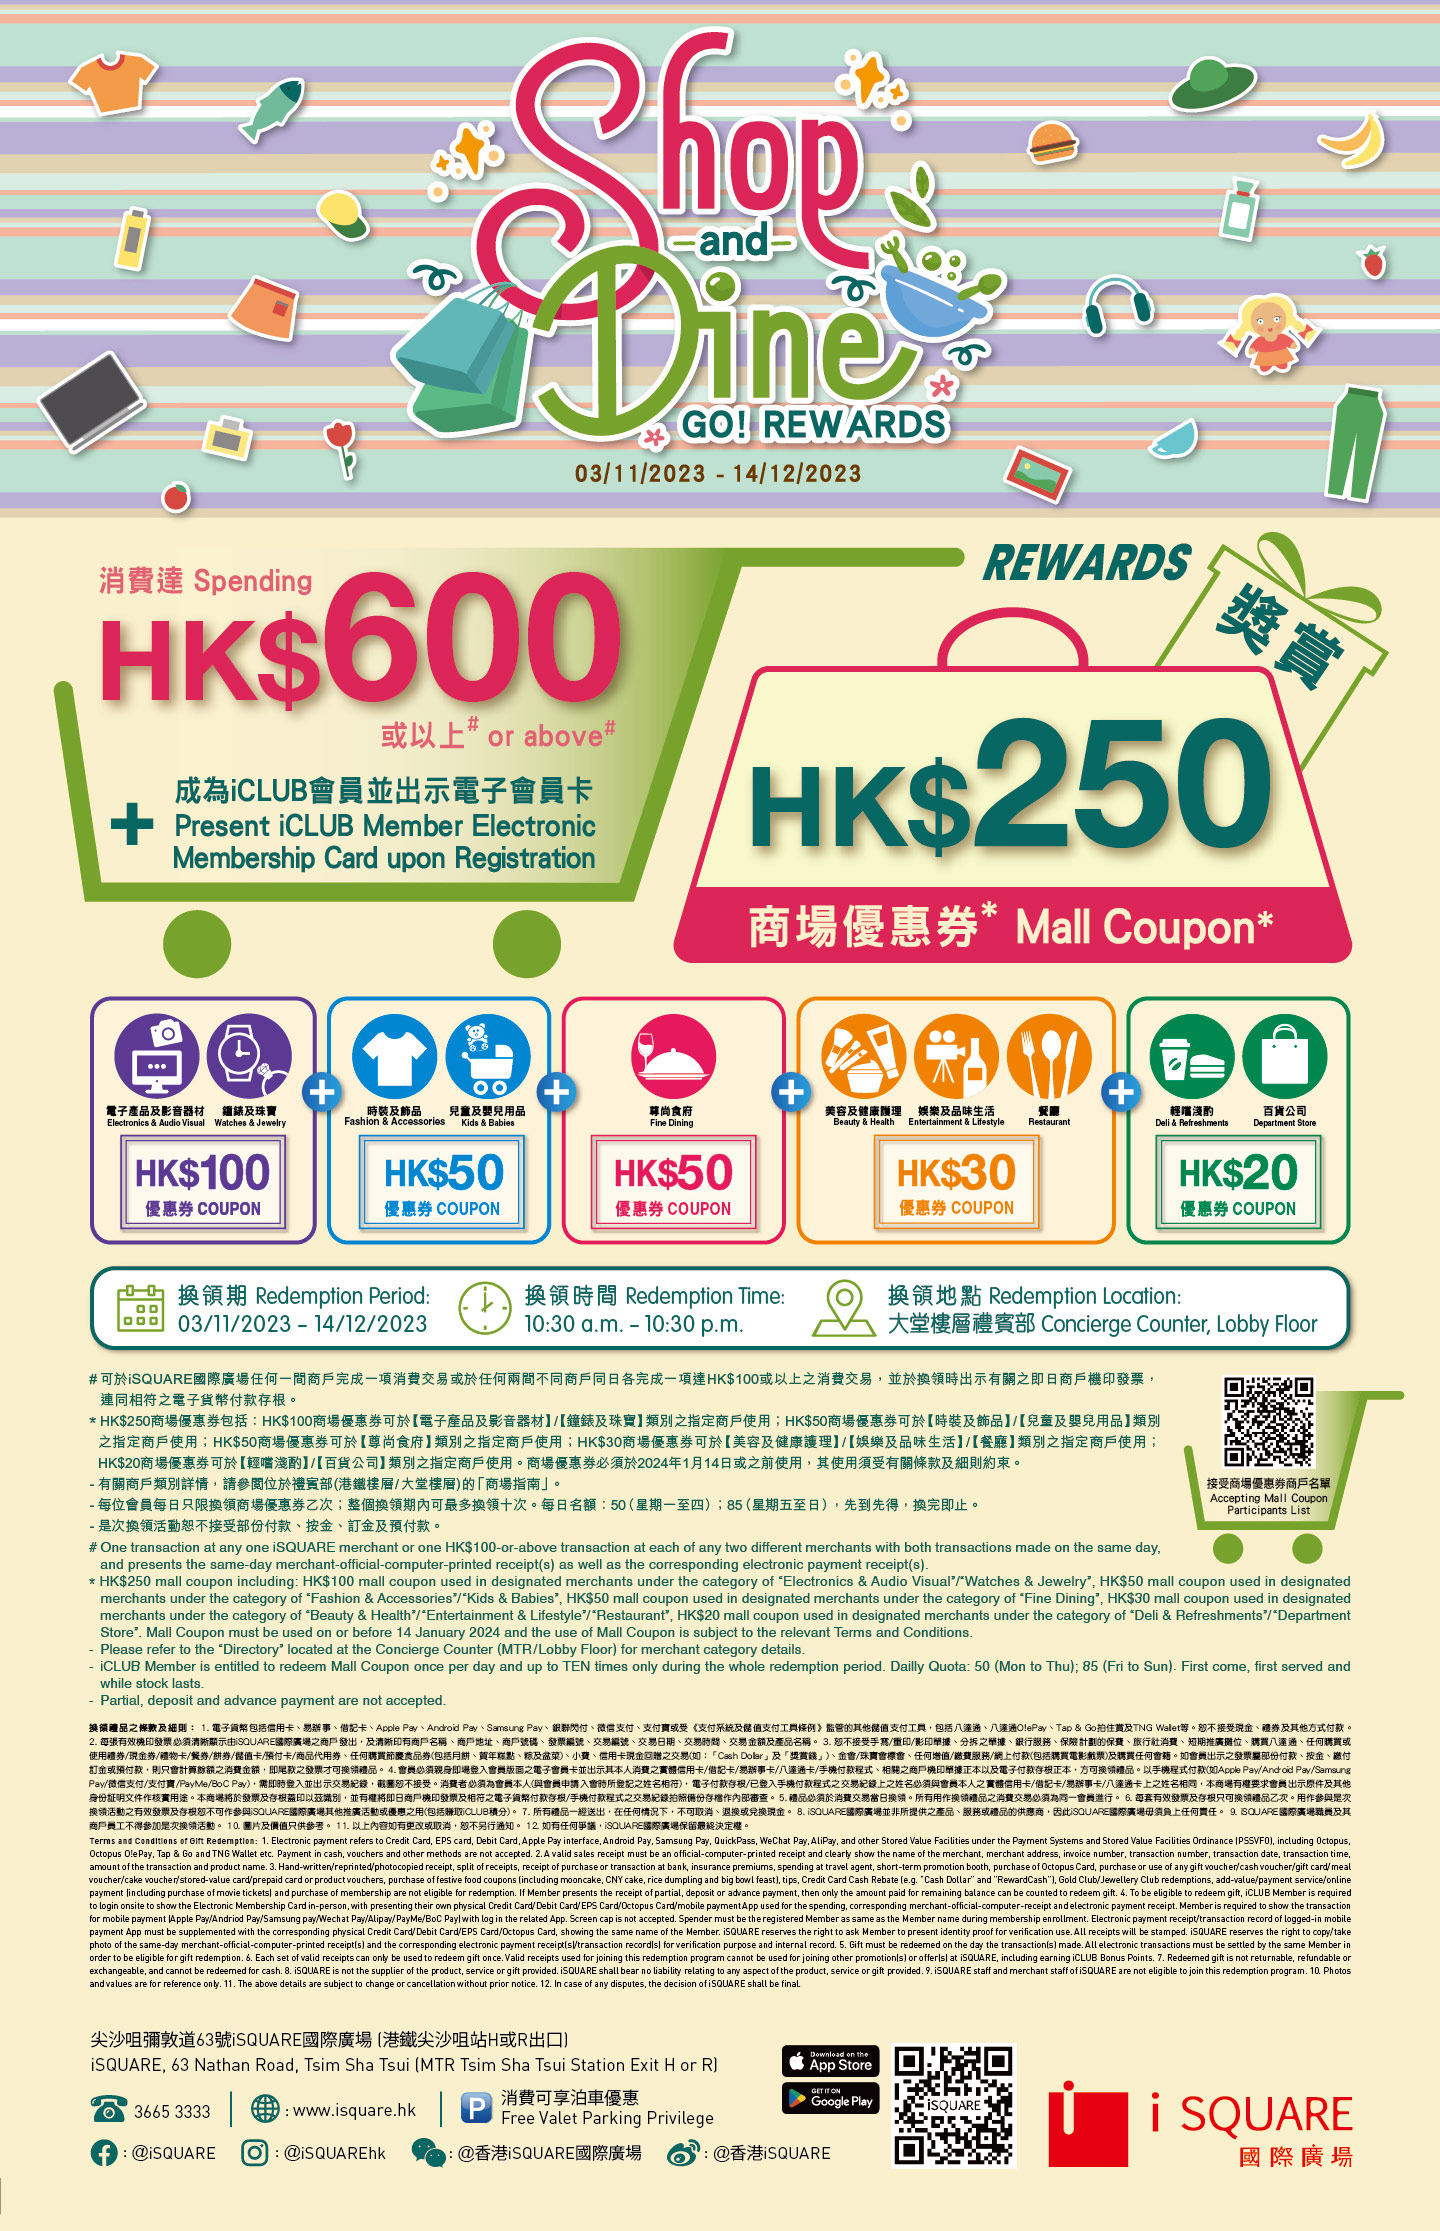 【Shop & Dine GO! Rewards】消費滿HK$600 即可換領「HK$250商場優惠券」